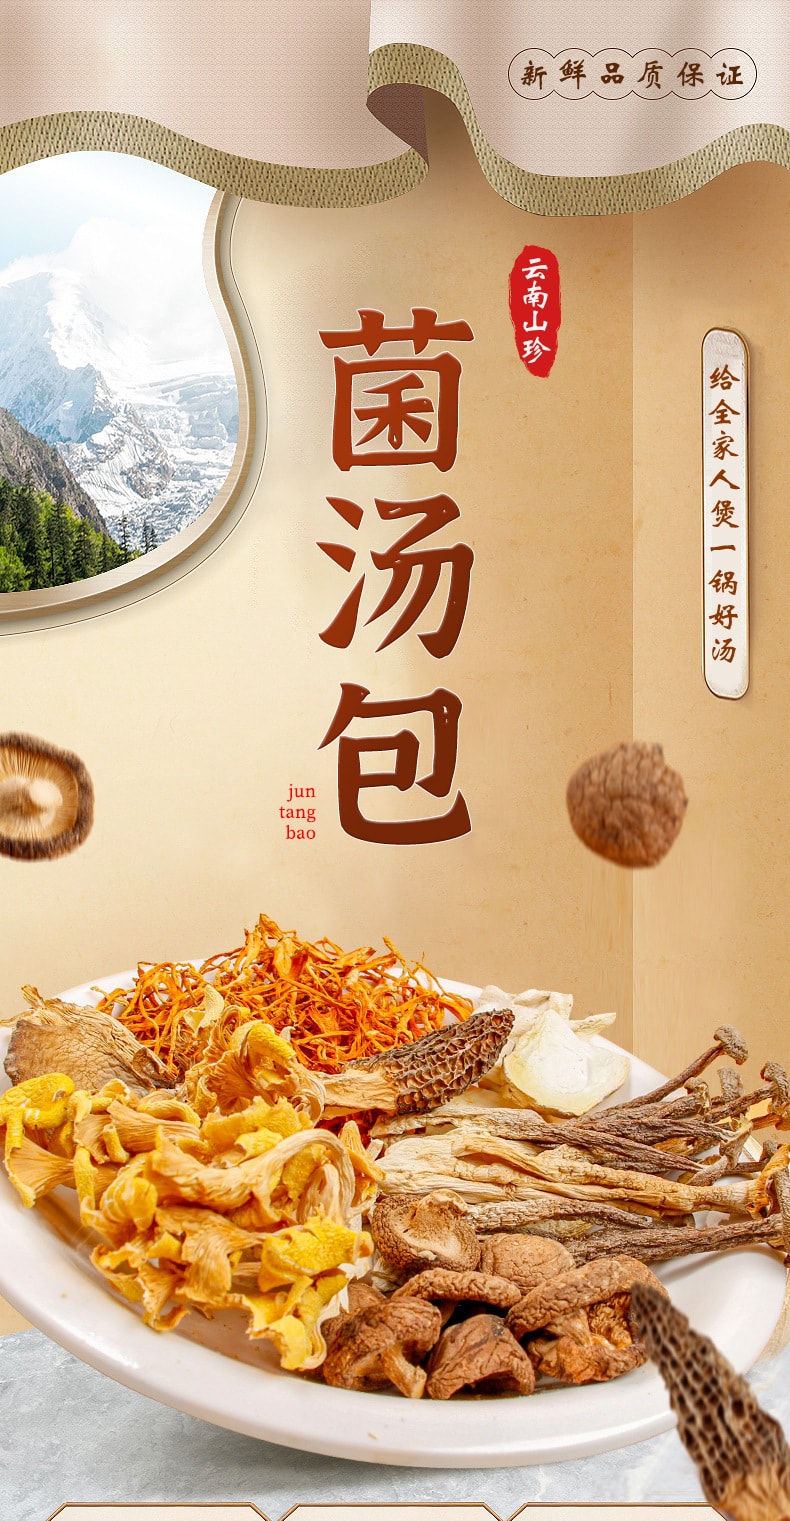 中國 錦花秀草 雲南當季八珍菌湯包 70克 菌香濃鬱 火鍋提鮮 燉湯美味 不含紅棗